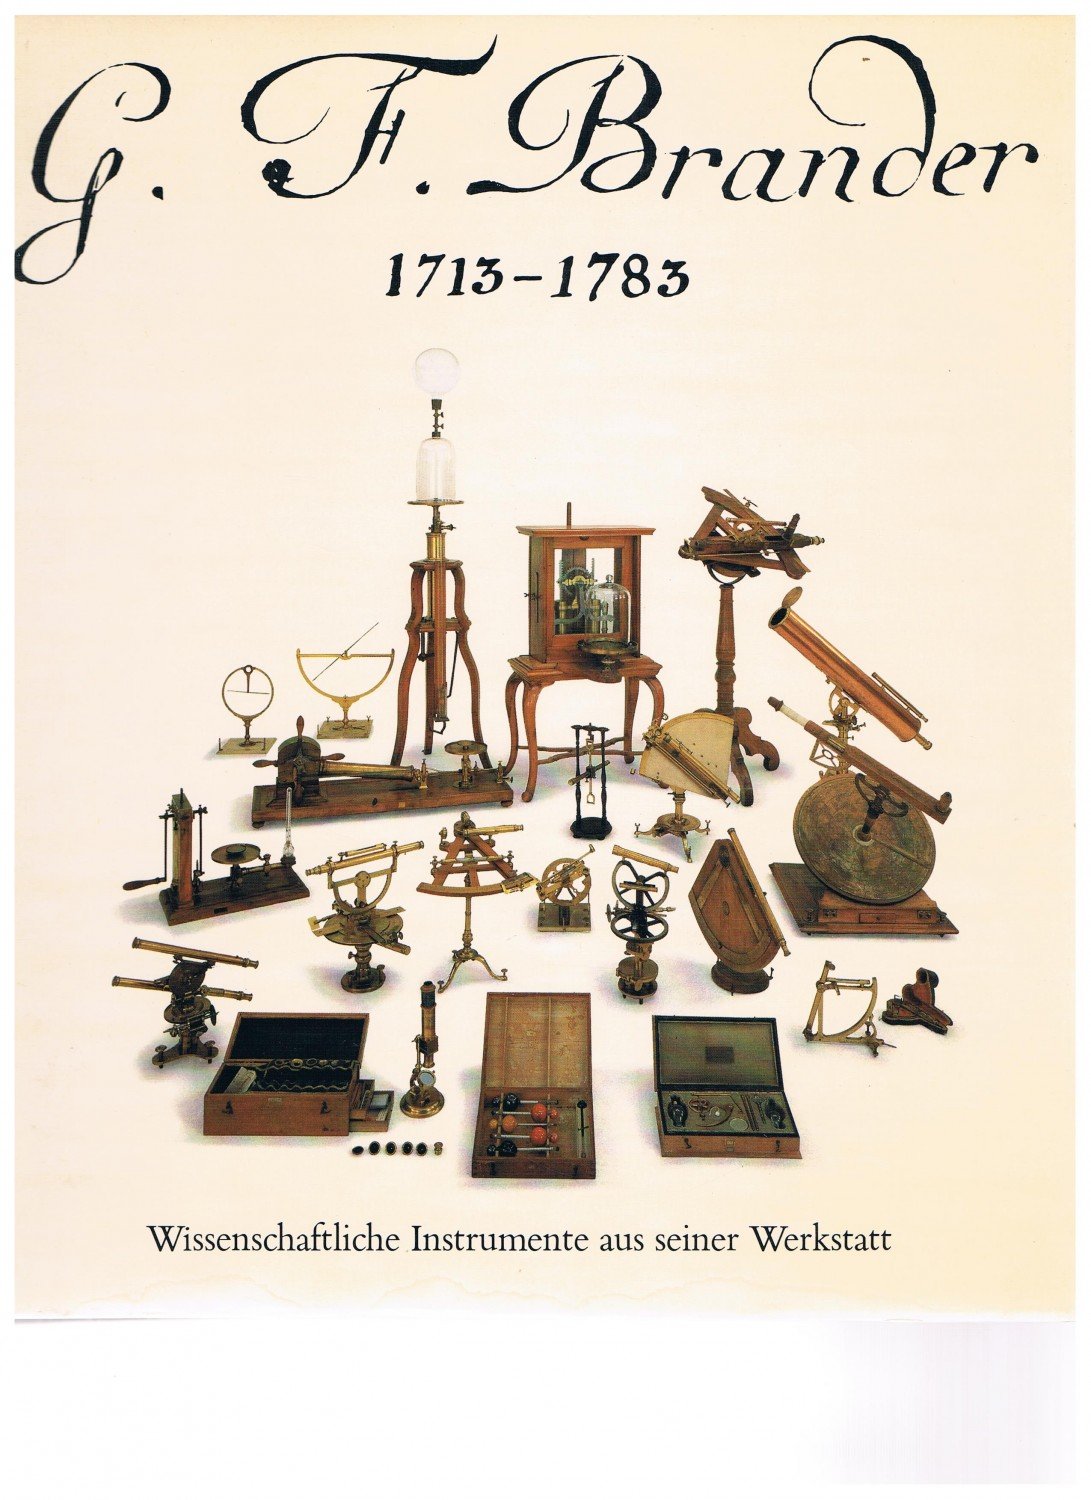 1983 G.F wissenschaftliche Instrumente aus seiner Werkstatt. Brander 1713-1783 